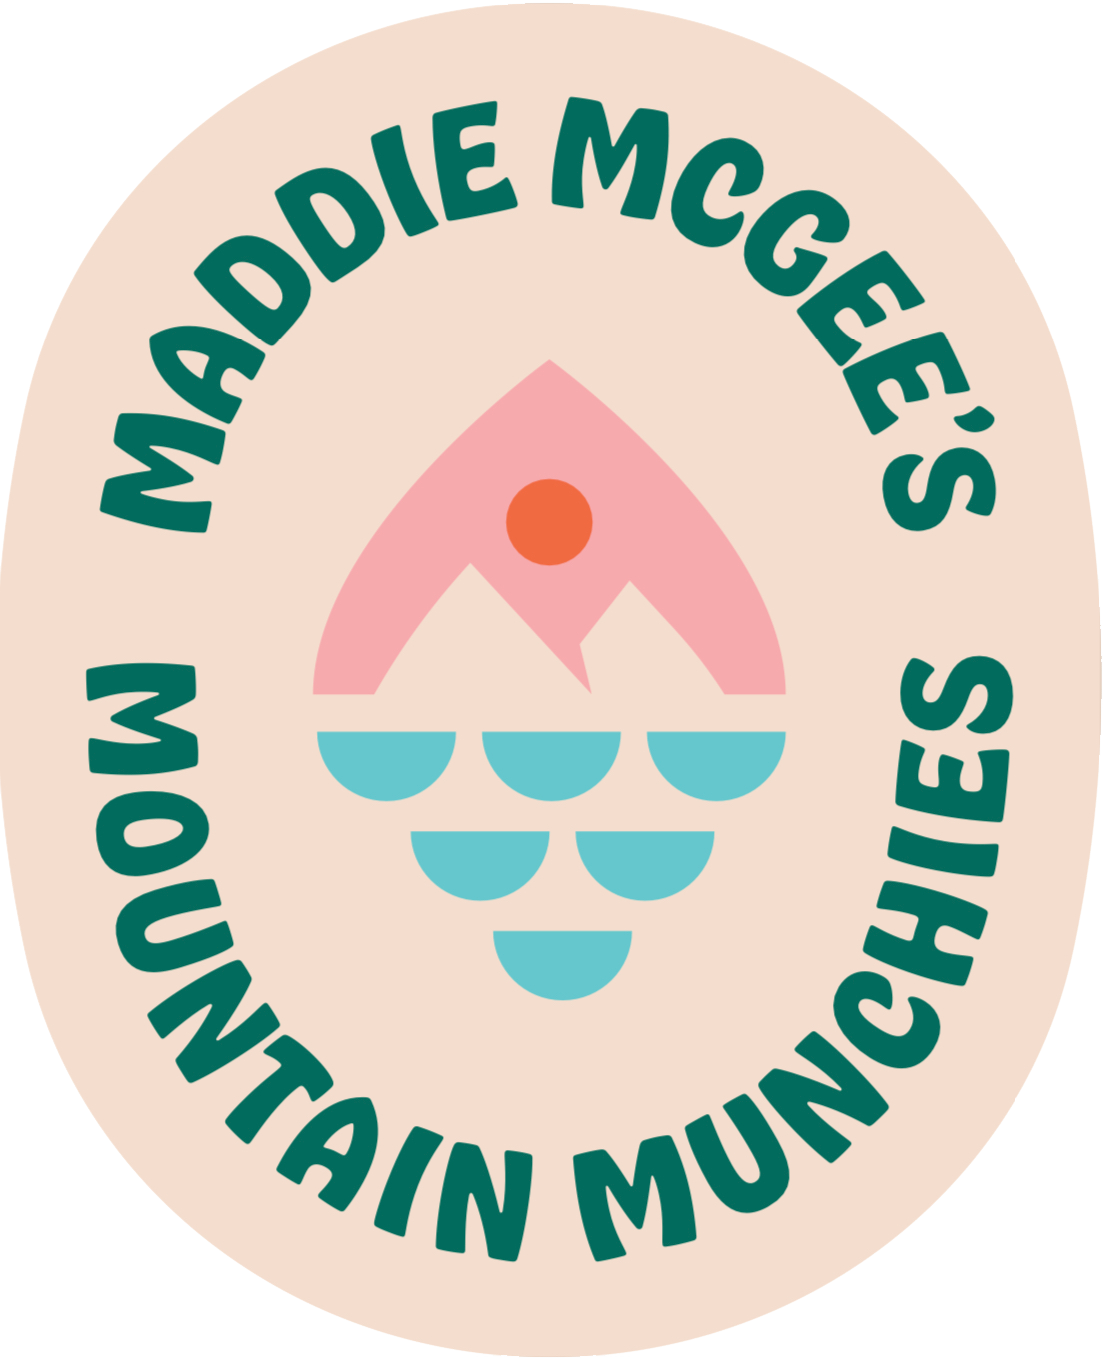 Maddie McGee's Mountain Munchies